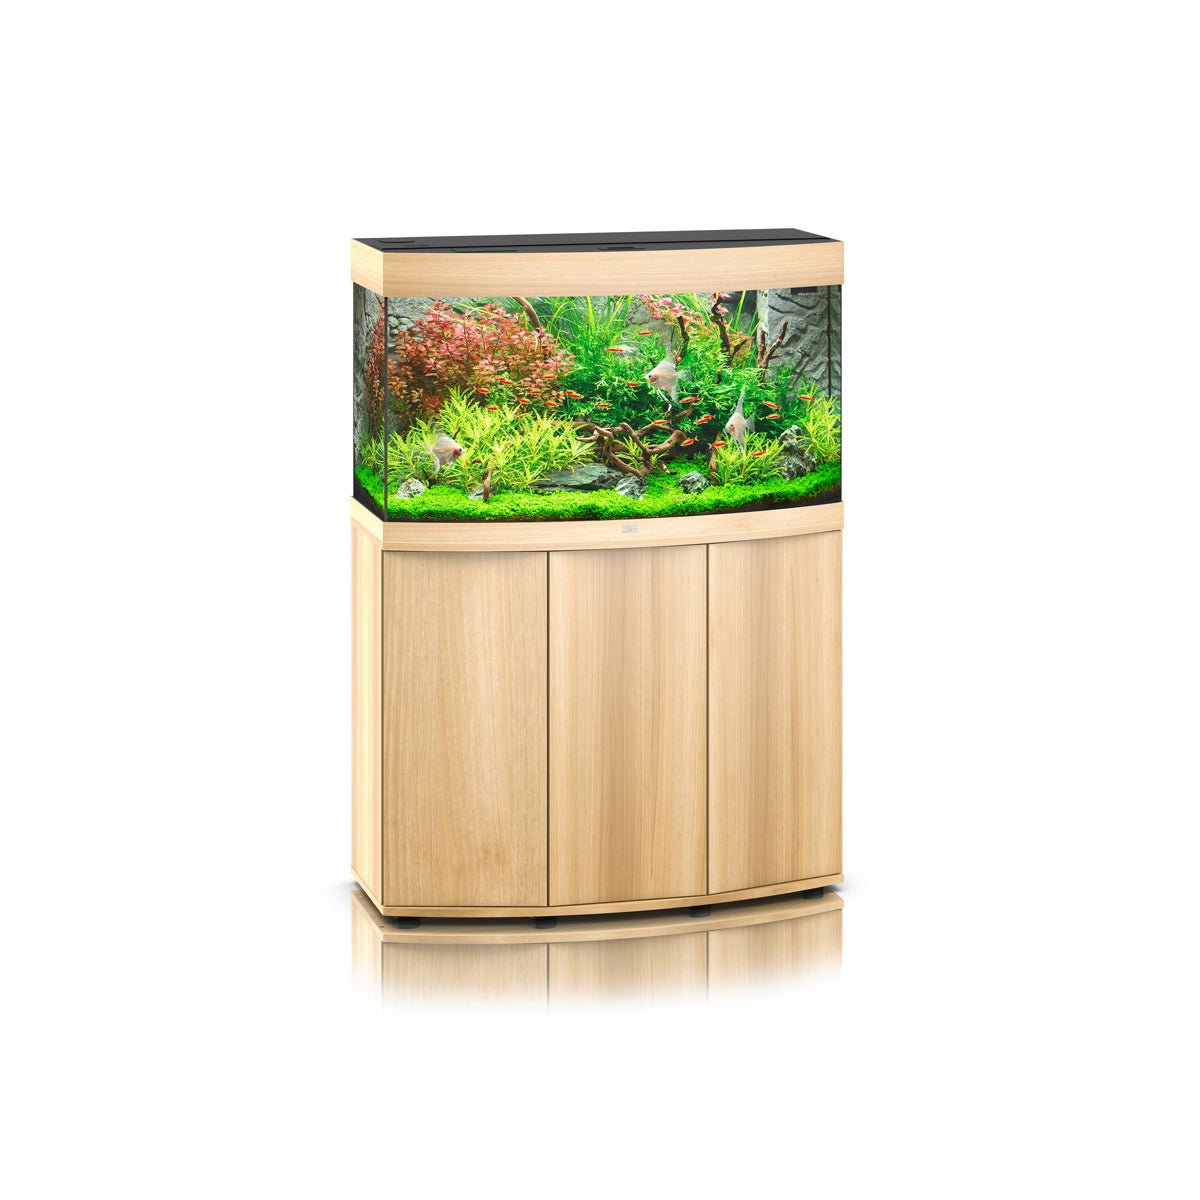 Juwel Vision 180 LED Aquarium and Cabinet (Light Wood) - Charterhouse Aquatics